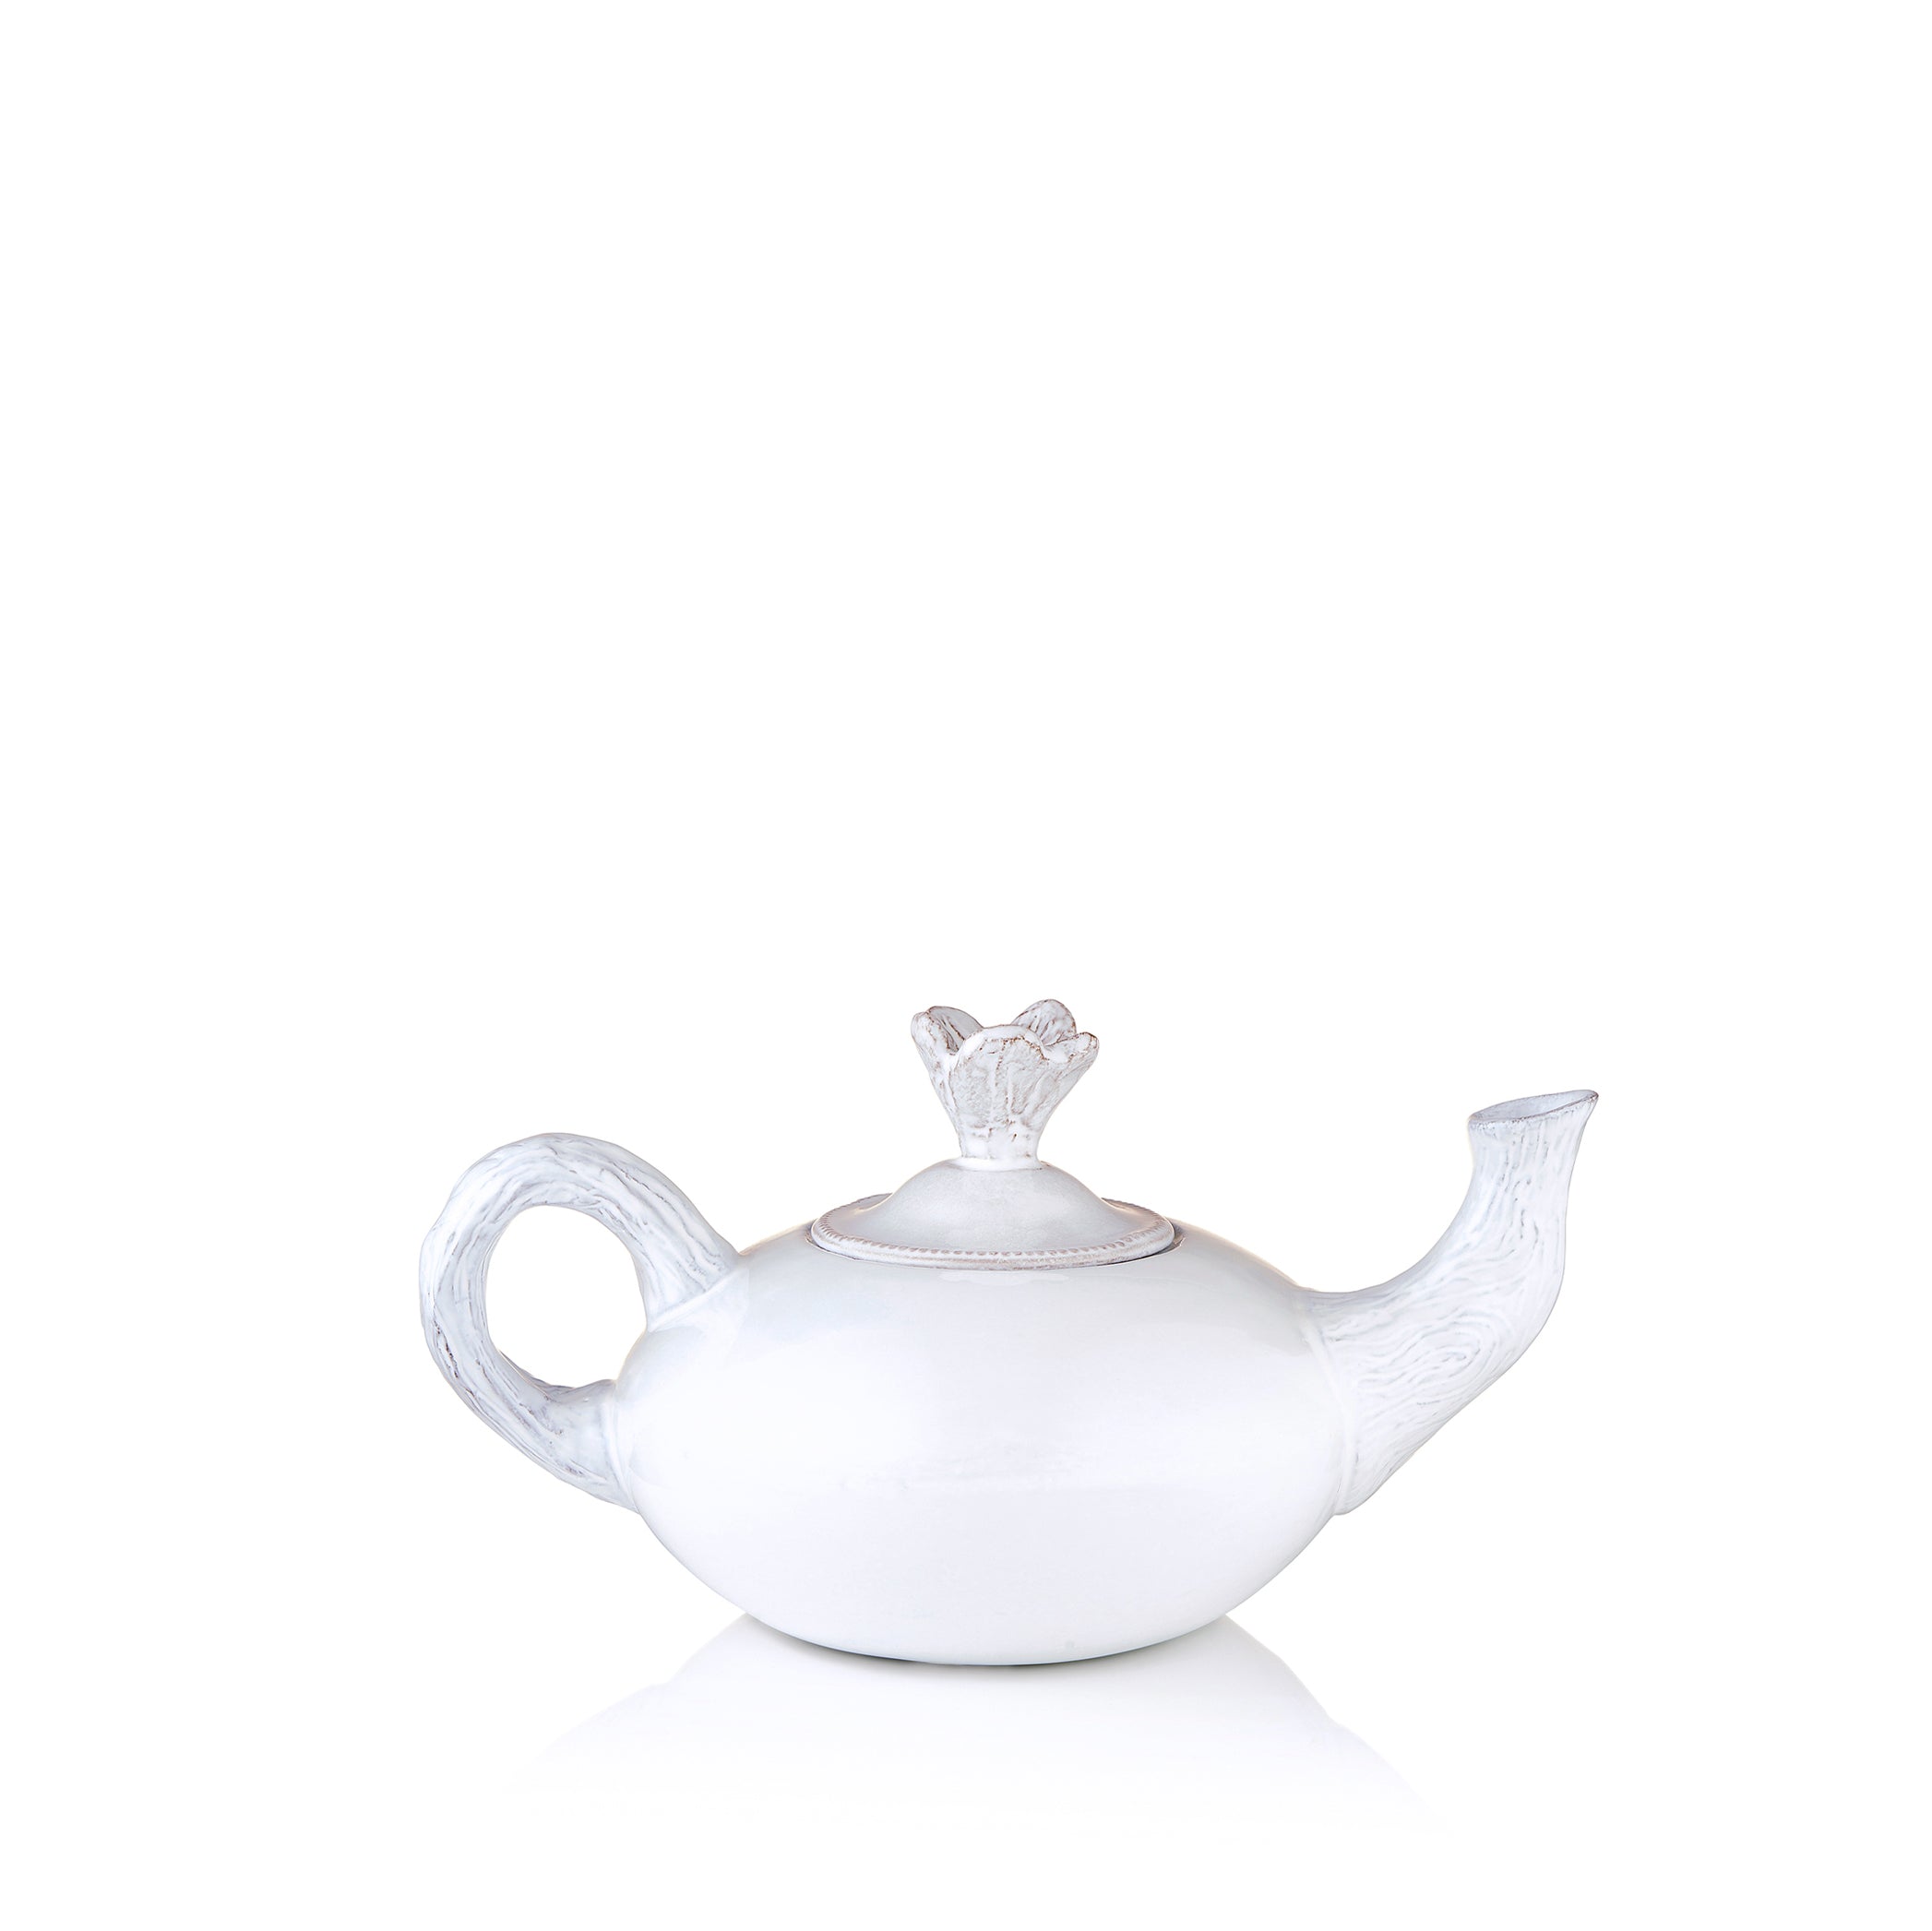 Fleur Teapot by Astier de Villaltte